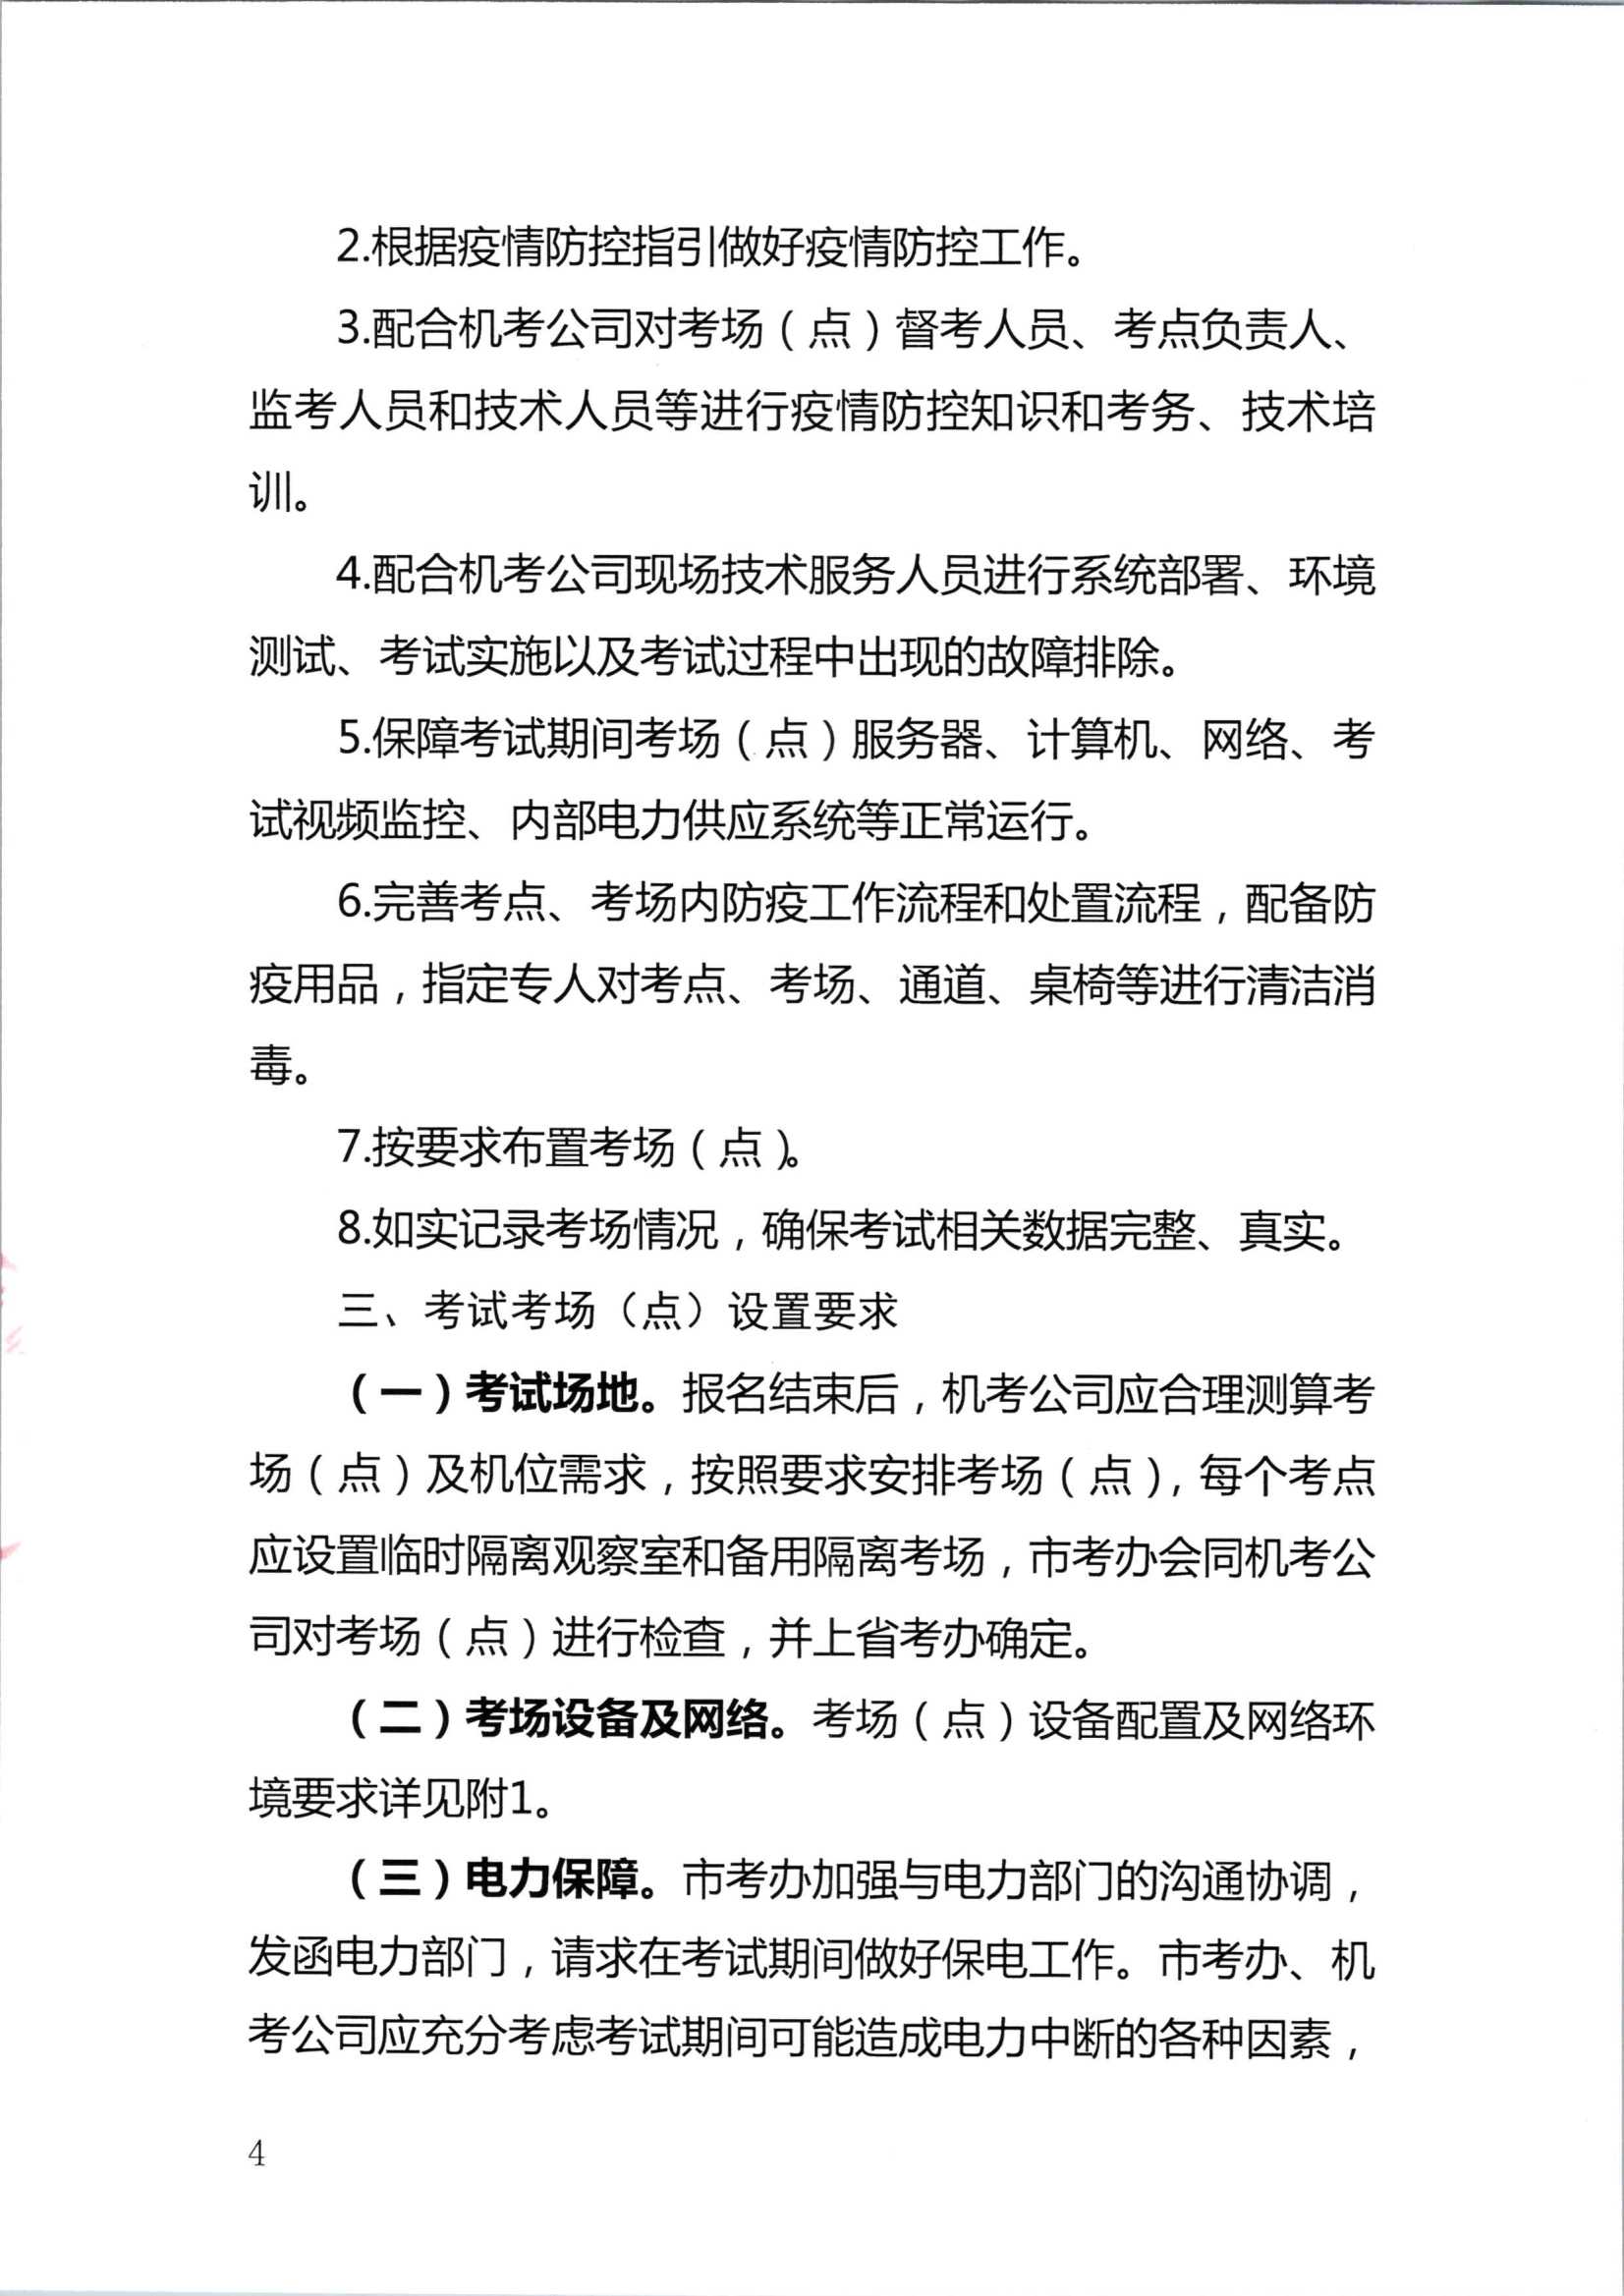 2020年注册会计师全国统一考试深圳考区工作方案_4.Png